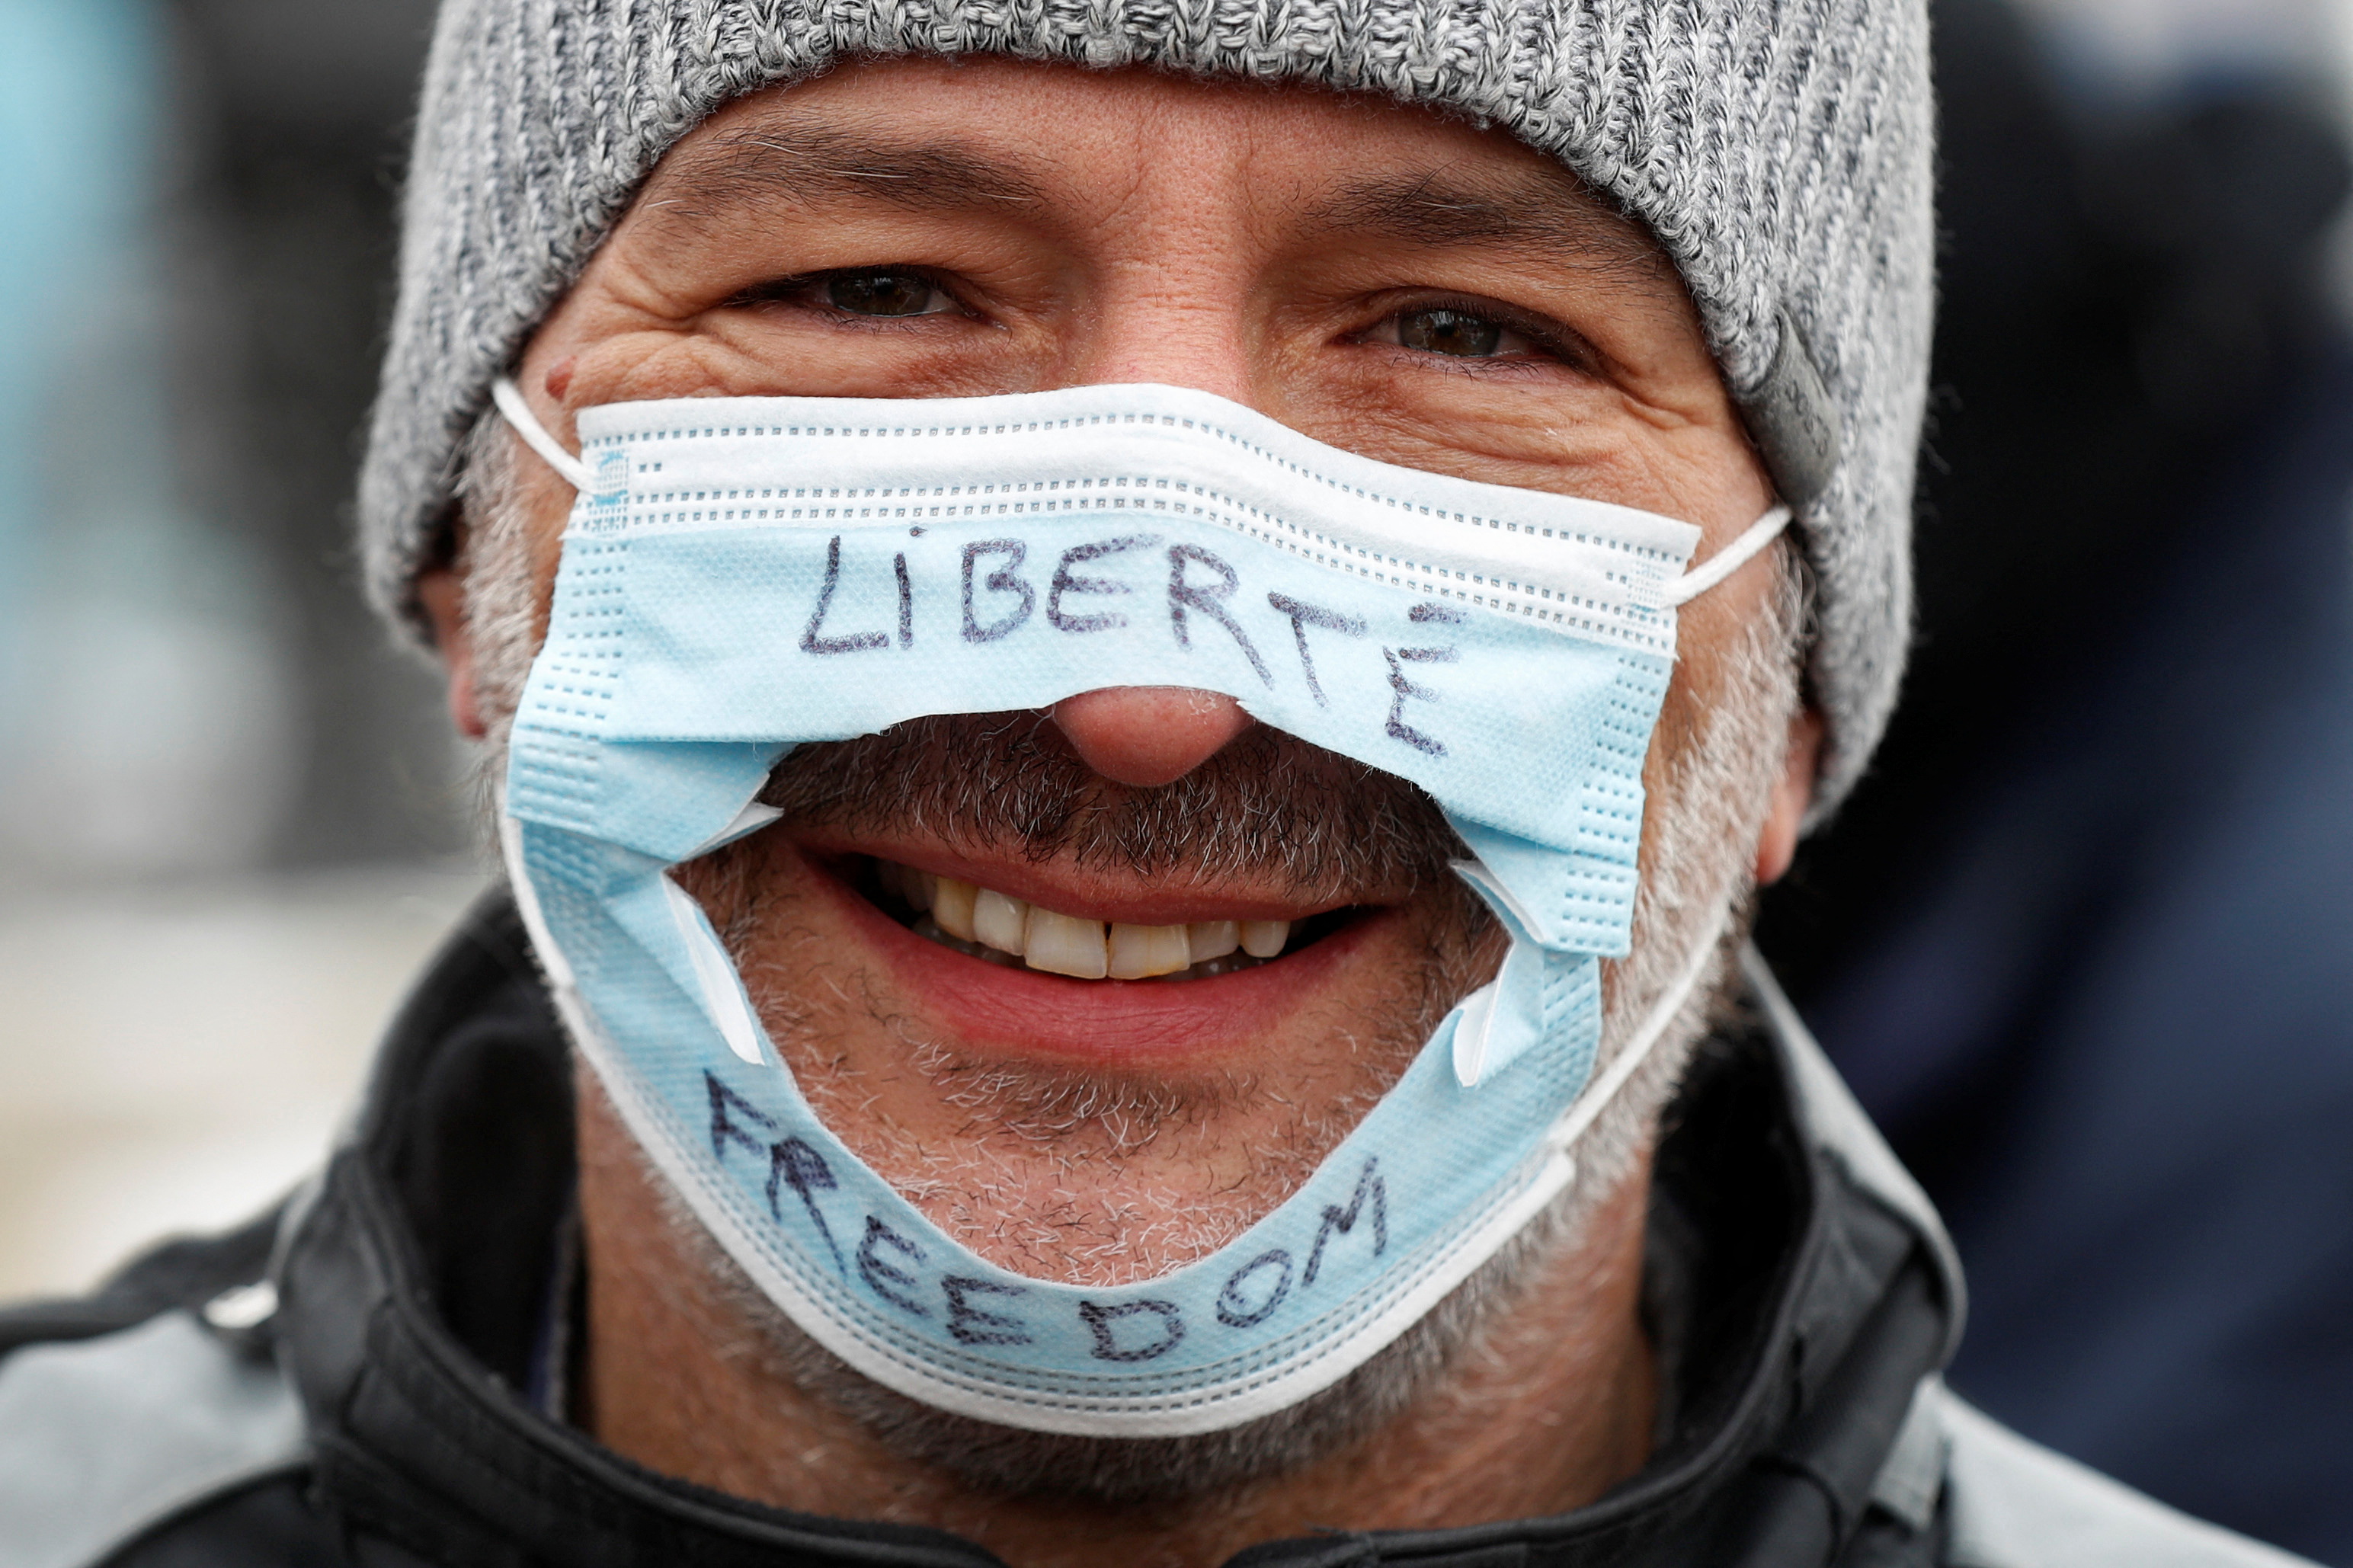 Una persona usa una máscara quirúrgica que ha sido cortada, mientras los camioneros y simpatizantes continúan protestando por los mandatos de vacunación contra la enfermedad por coronavirus (COVID-19), en Ottawa, Ontario, Canadá, el 6 de febrero de 2022. REUTERS/Lars Hagberg